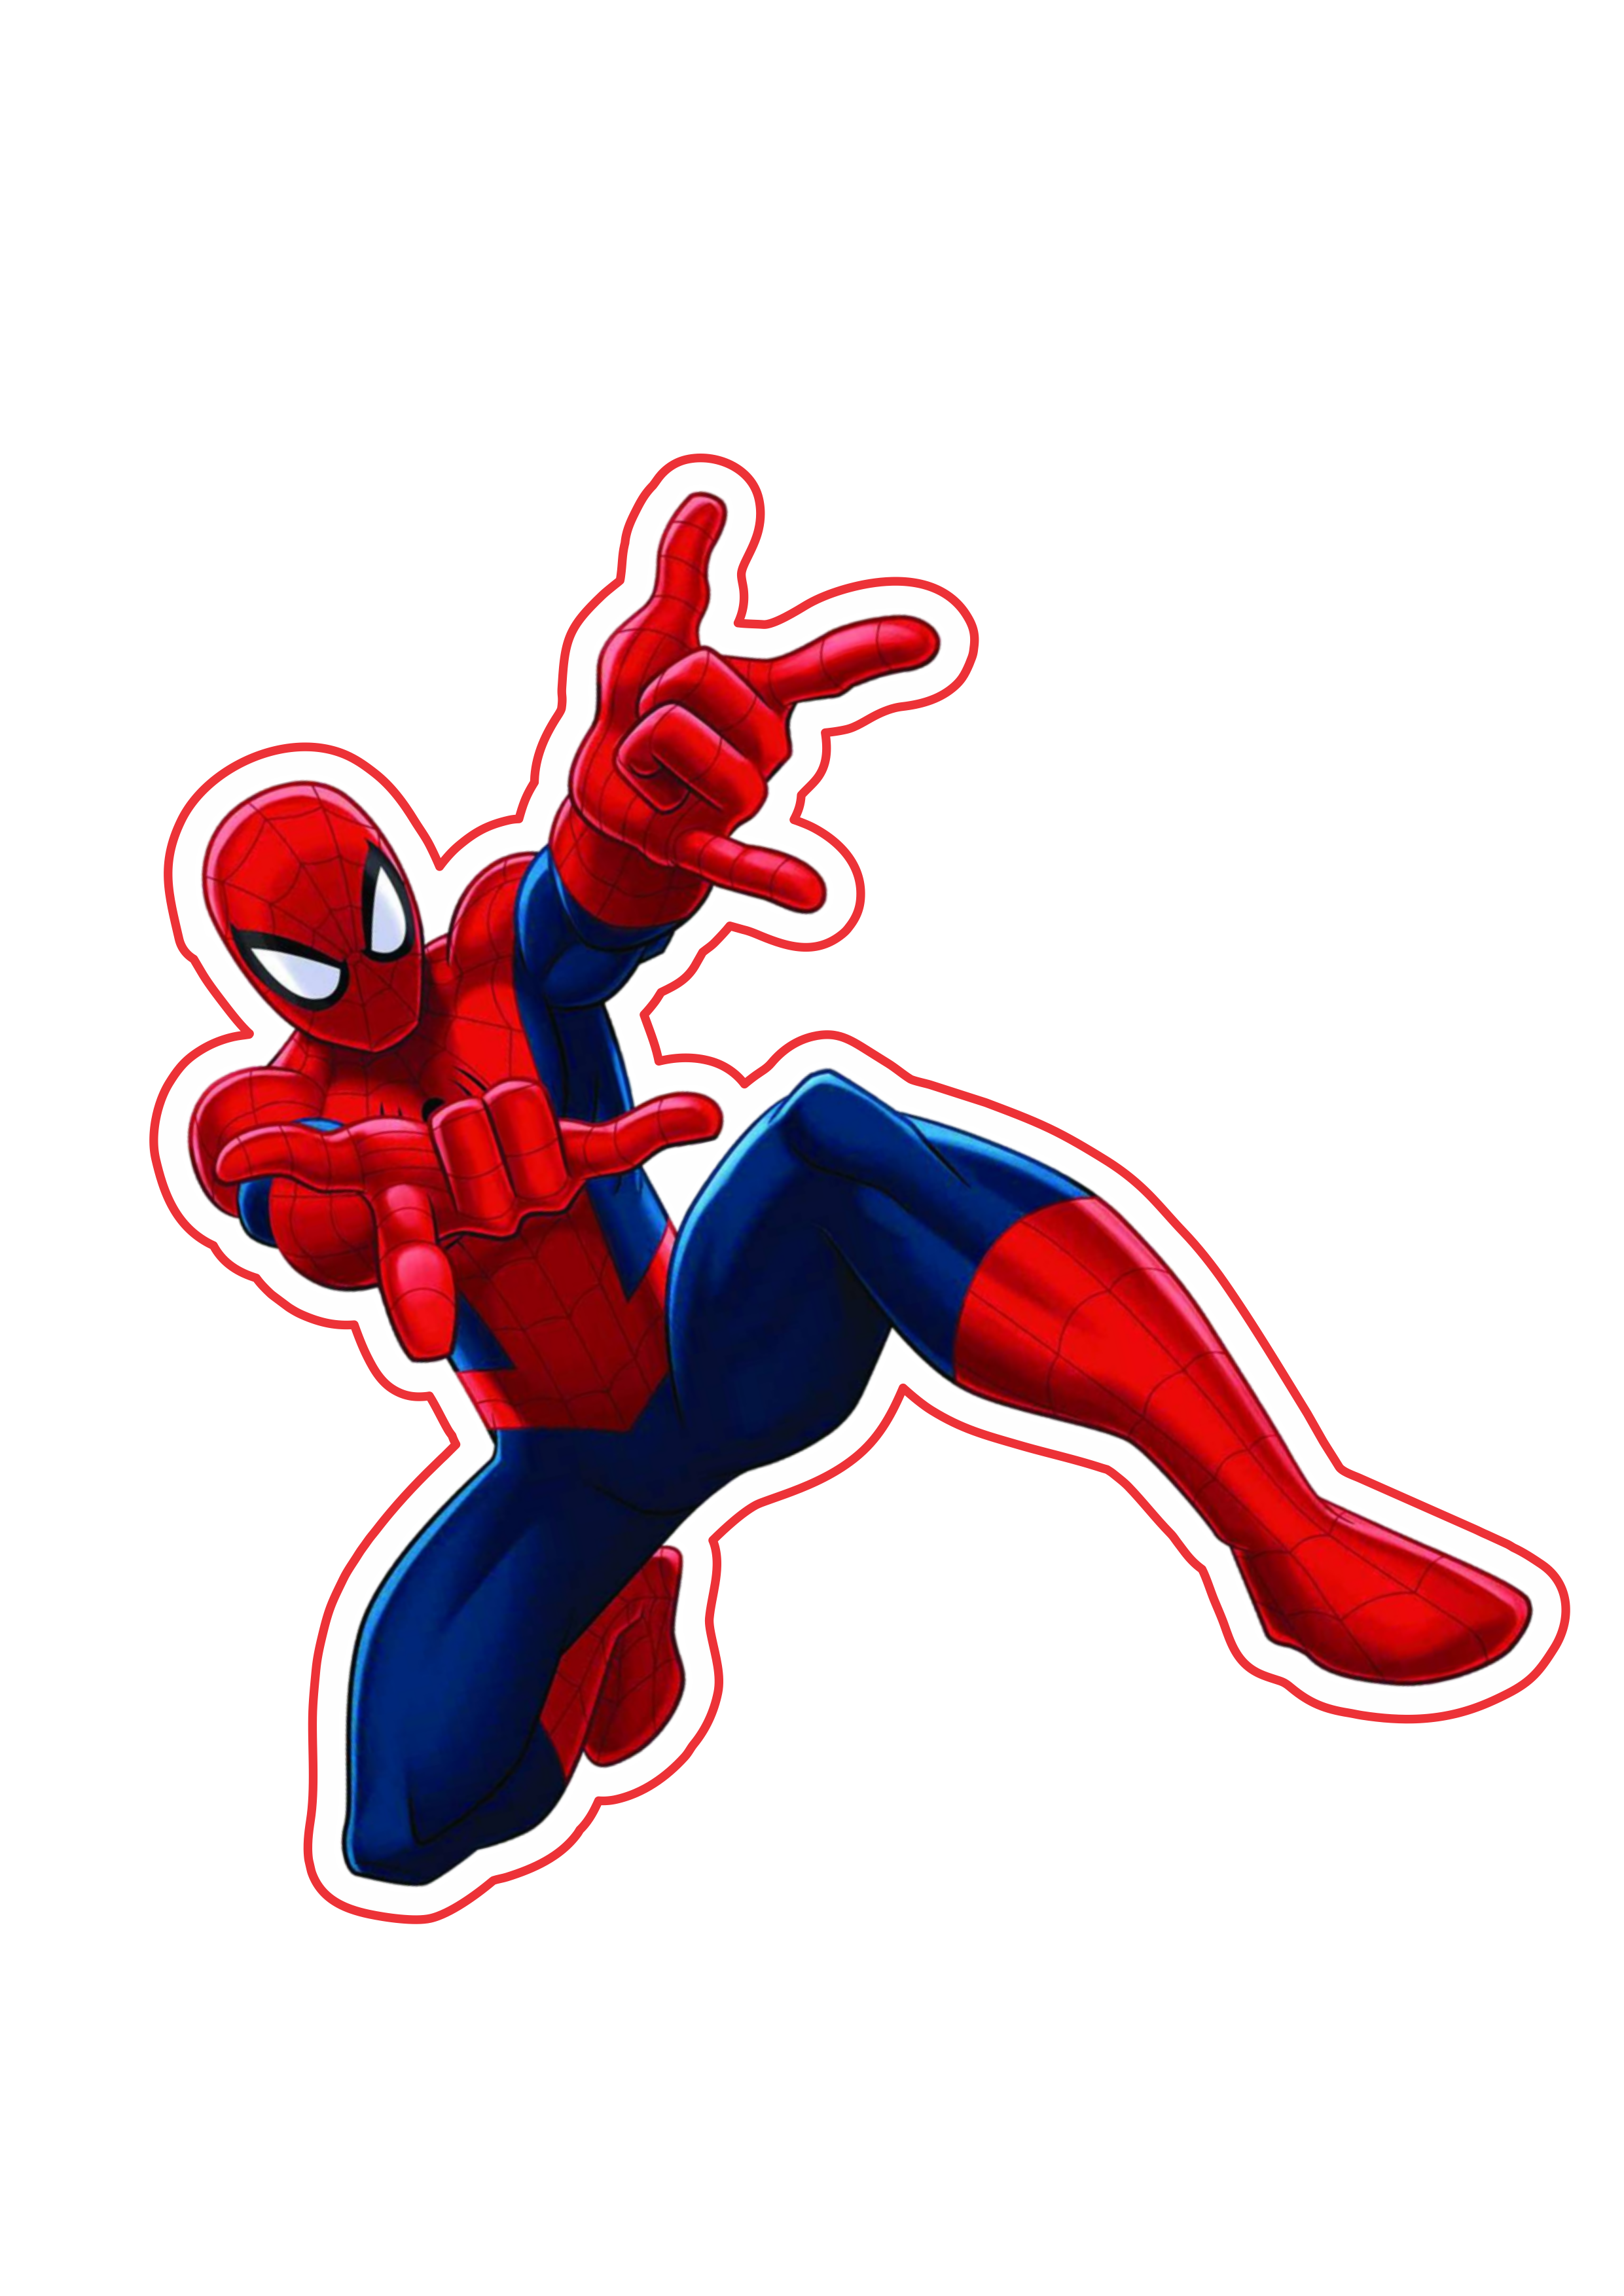 Homem aranha desenho ultimate imagem fundo transparente Marvel super heróis free image png